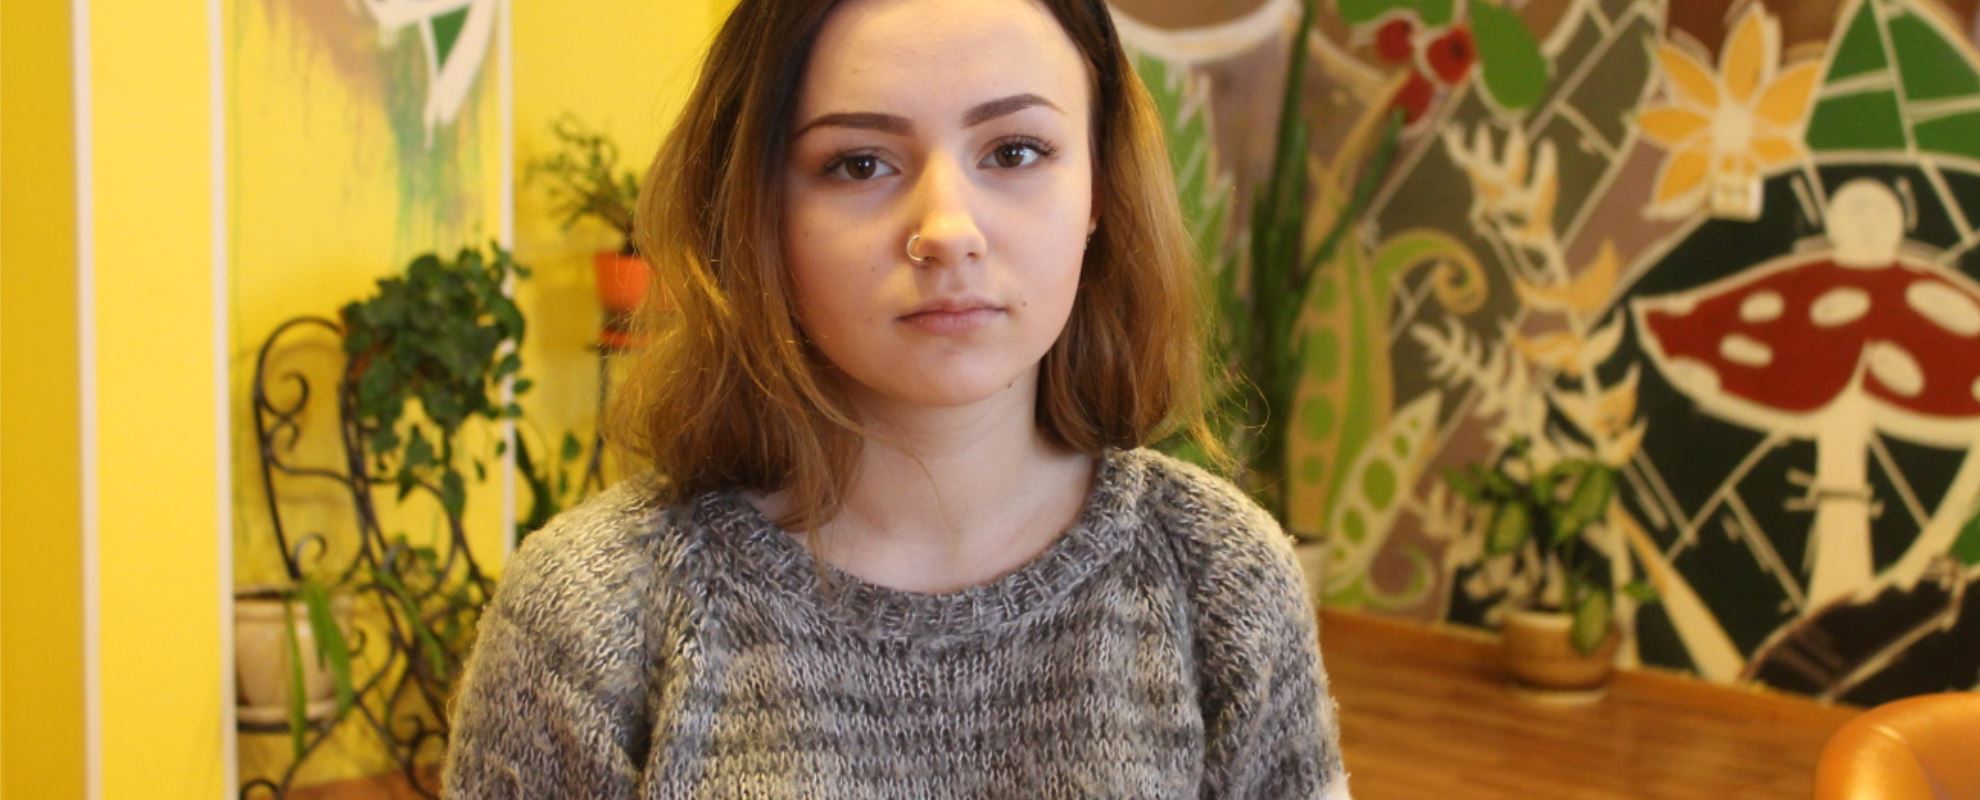 I fjor ble Nastya ferdig med videregående skole i Kandalaksha og flyttet inn i SOS-ungdomshuset i Murmansk. Det var en stor forandring i livet hennes. Foto: Anton Bakanin